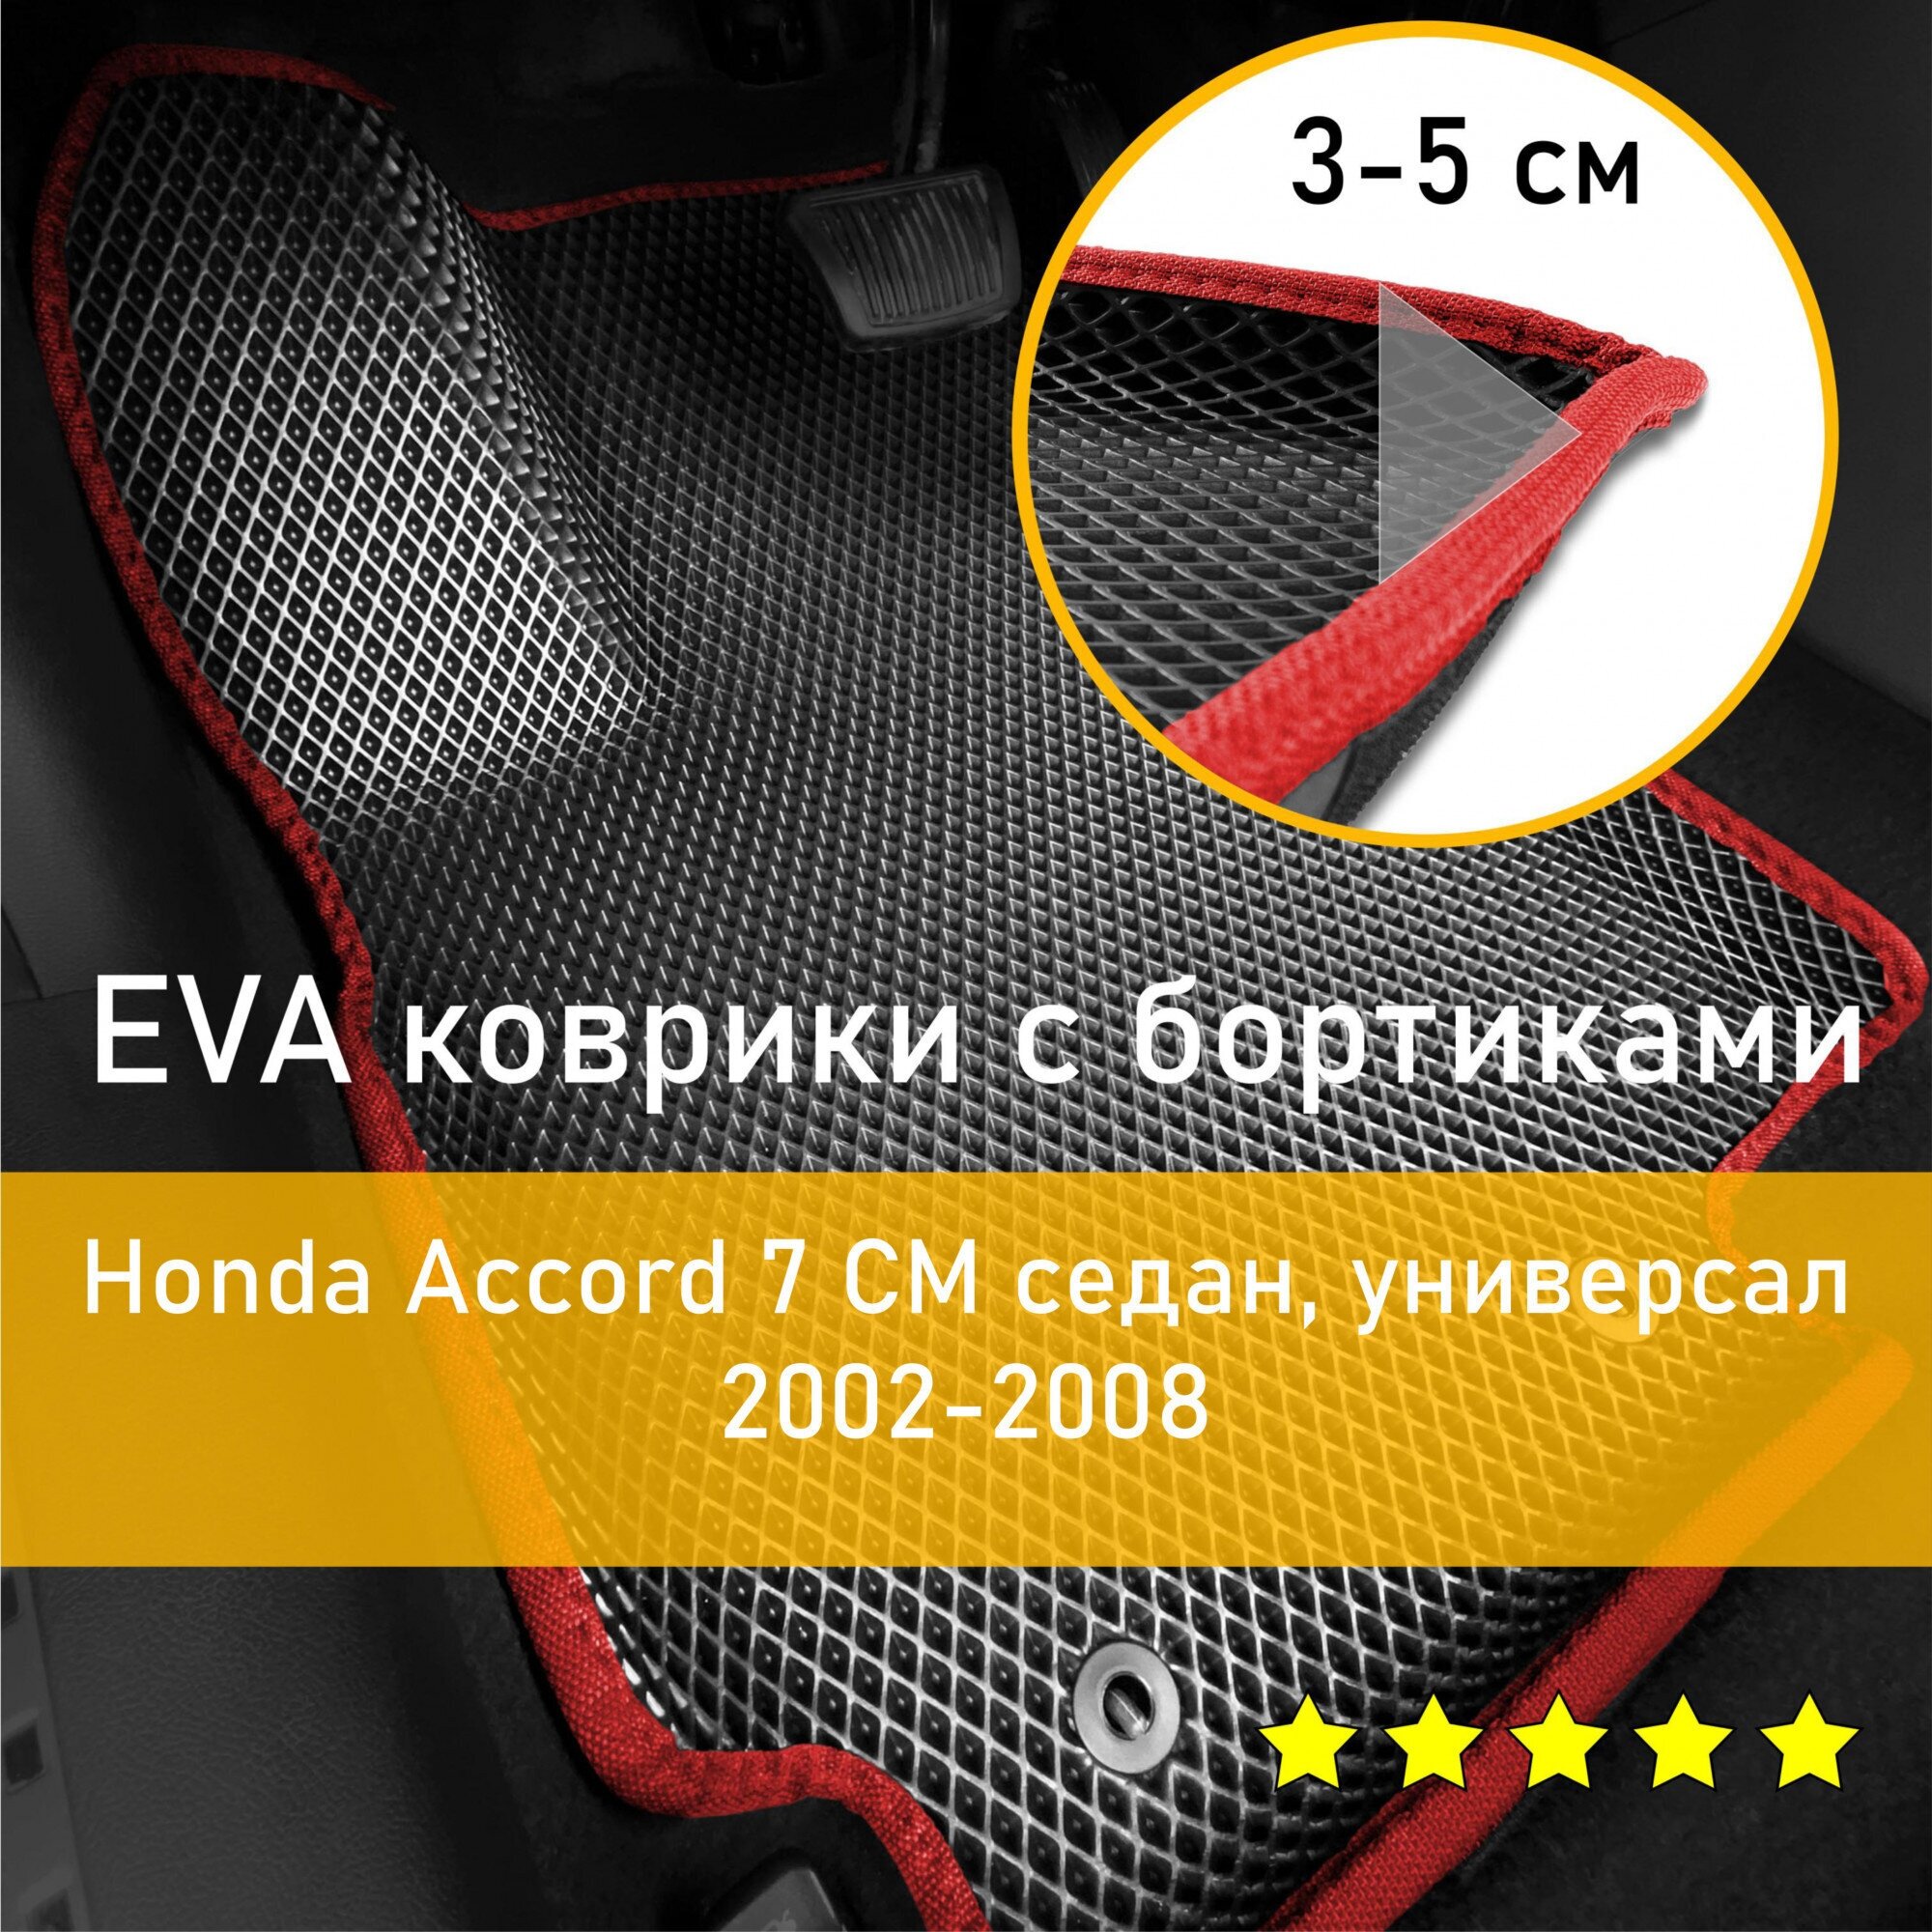 3Д коврики ЕВА (EVA, ЭВА) с бортиками на Honda Accord 7 CM 2002-2008 седан/универсал Хонда Аккорд (Акорд) Левый руль Ромб Черный с красной окантовкой